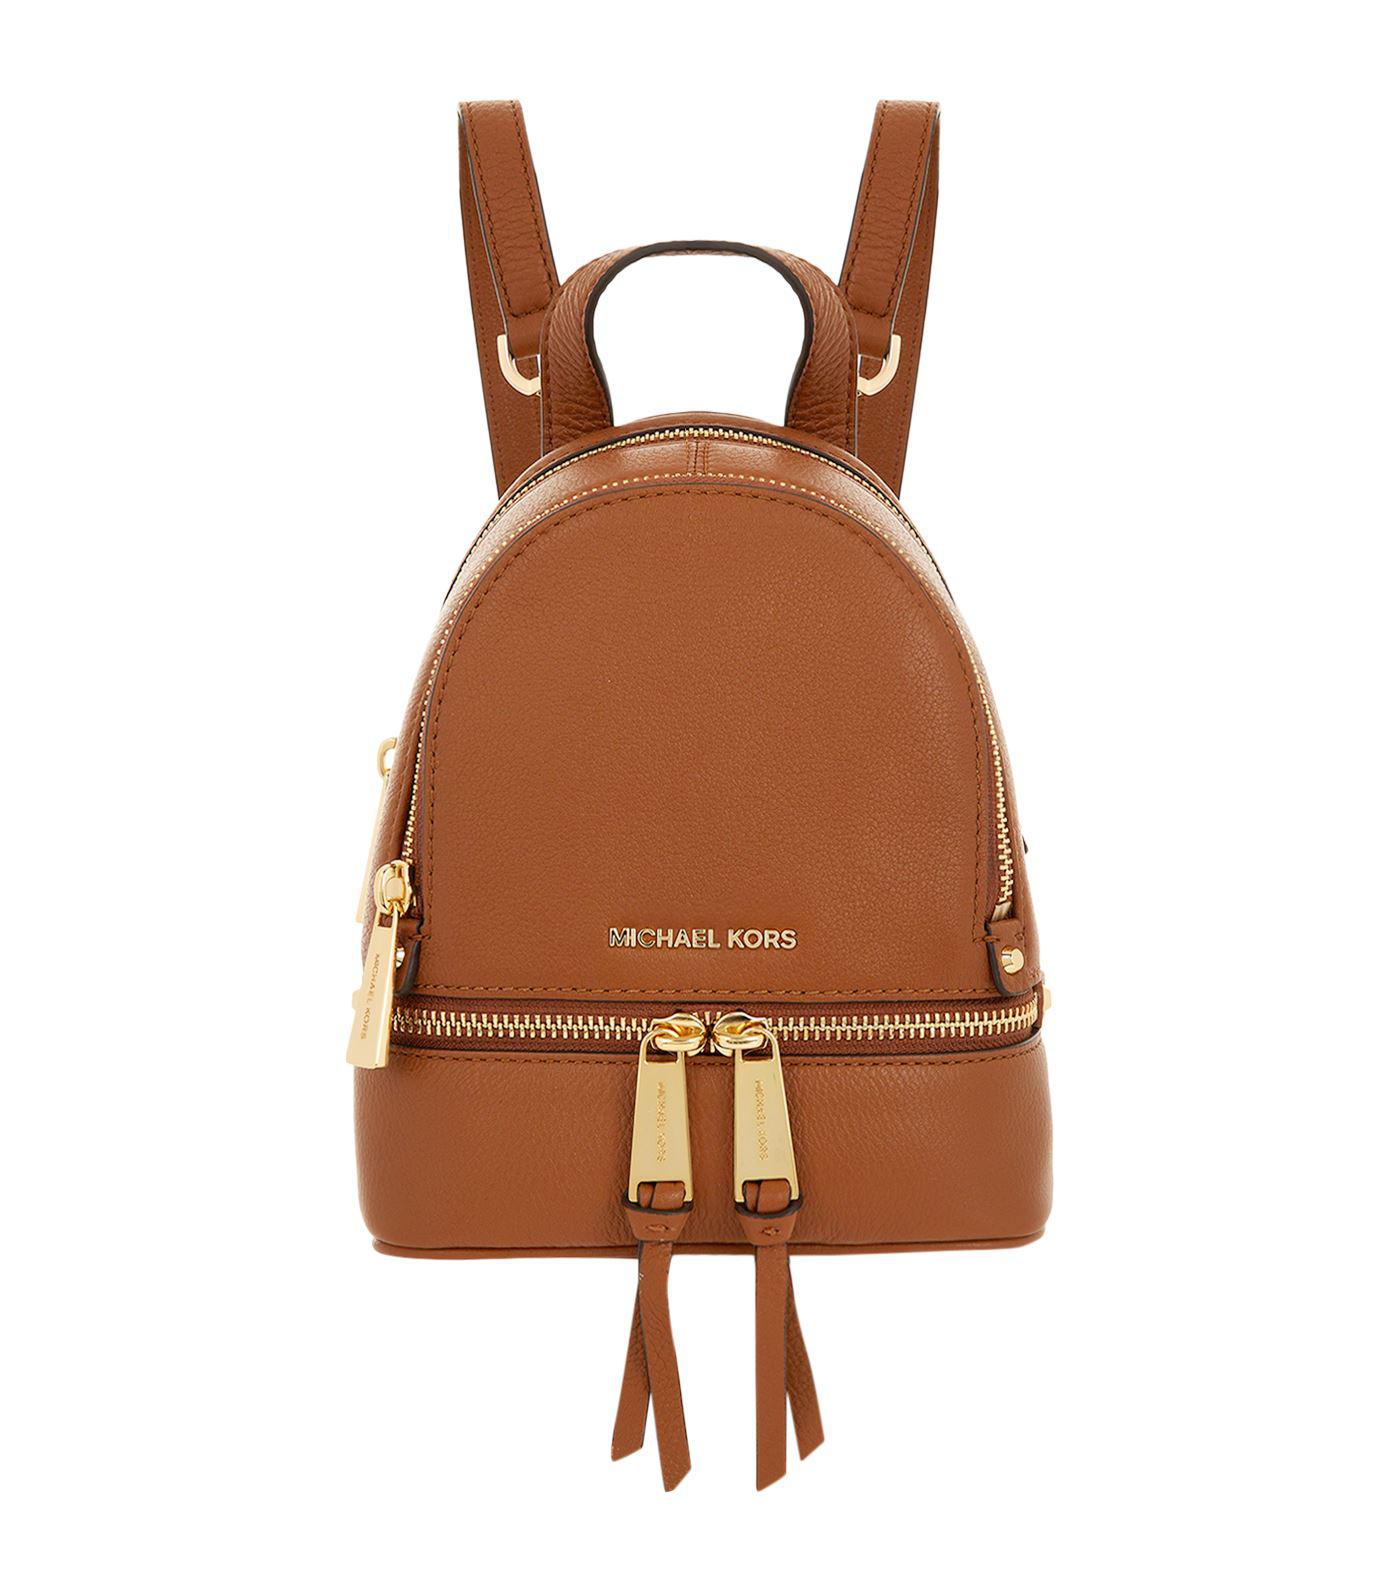 michael kors rhea mini backpack brown